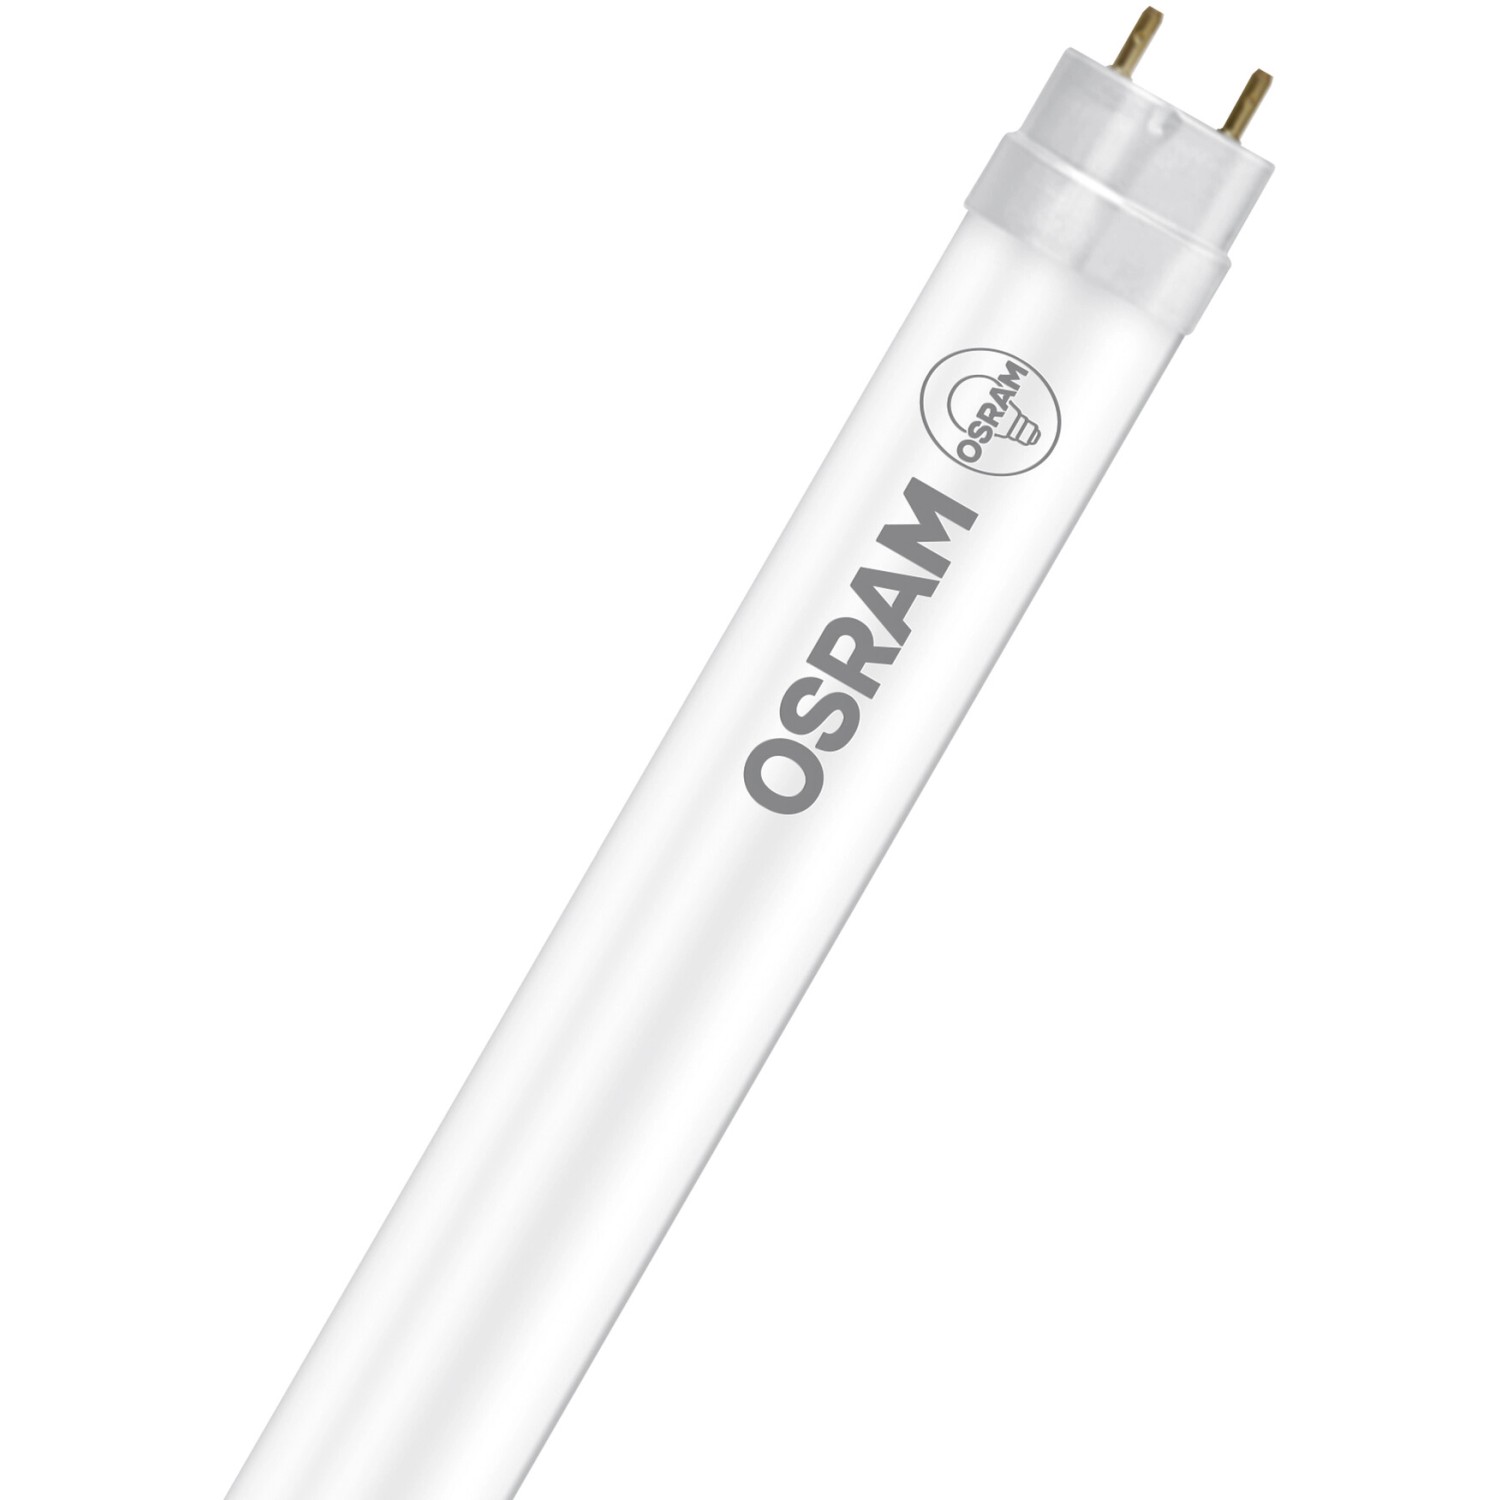 Osram LED-Leuchtstofflampen G13 Röhre 10 W 1080 lm 90,8 cm x 2,7 cm Warmweiß